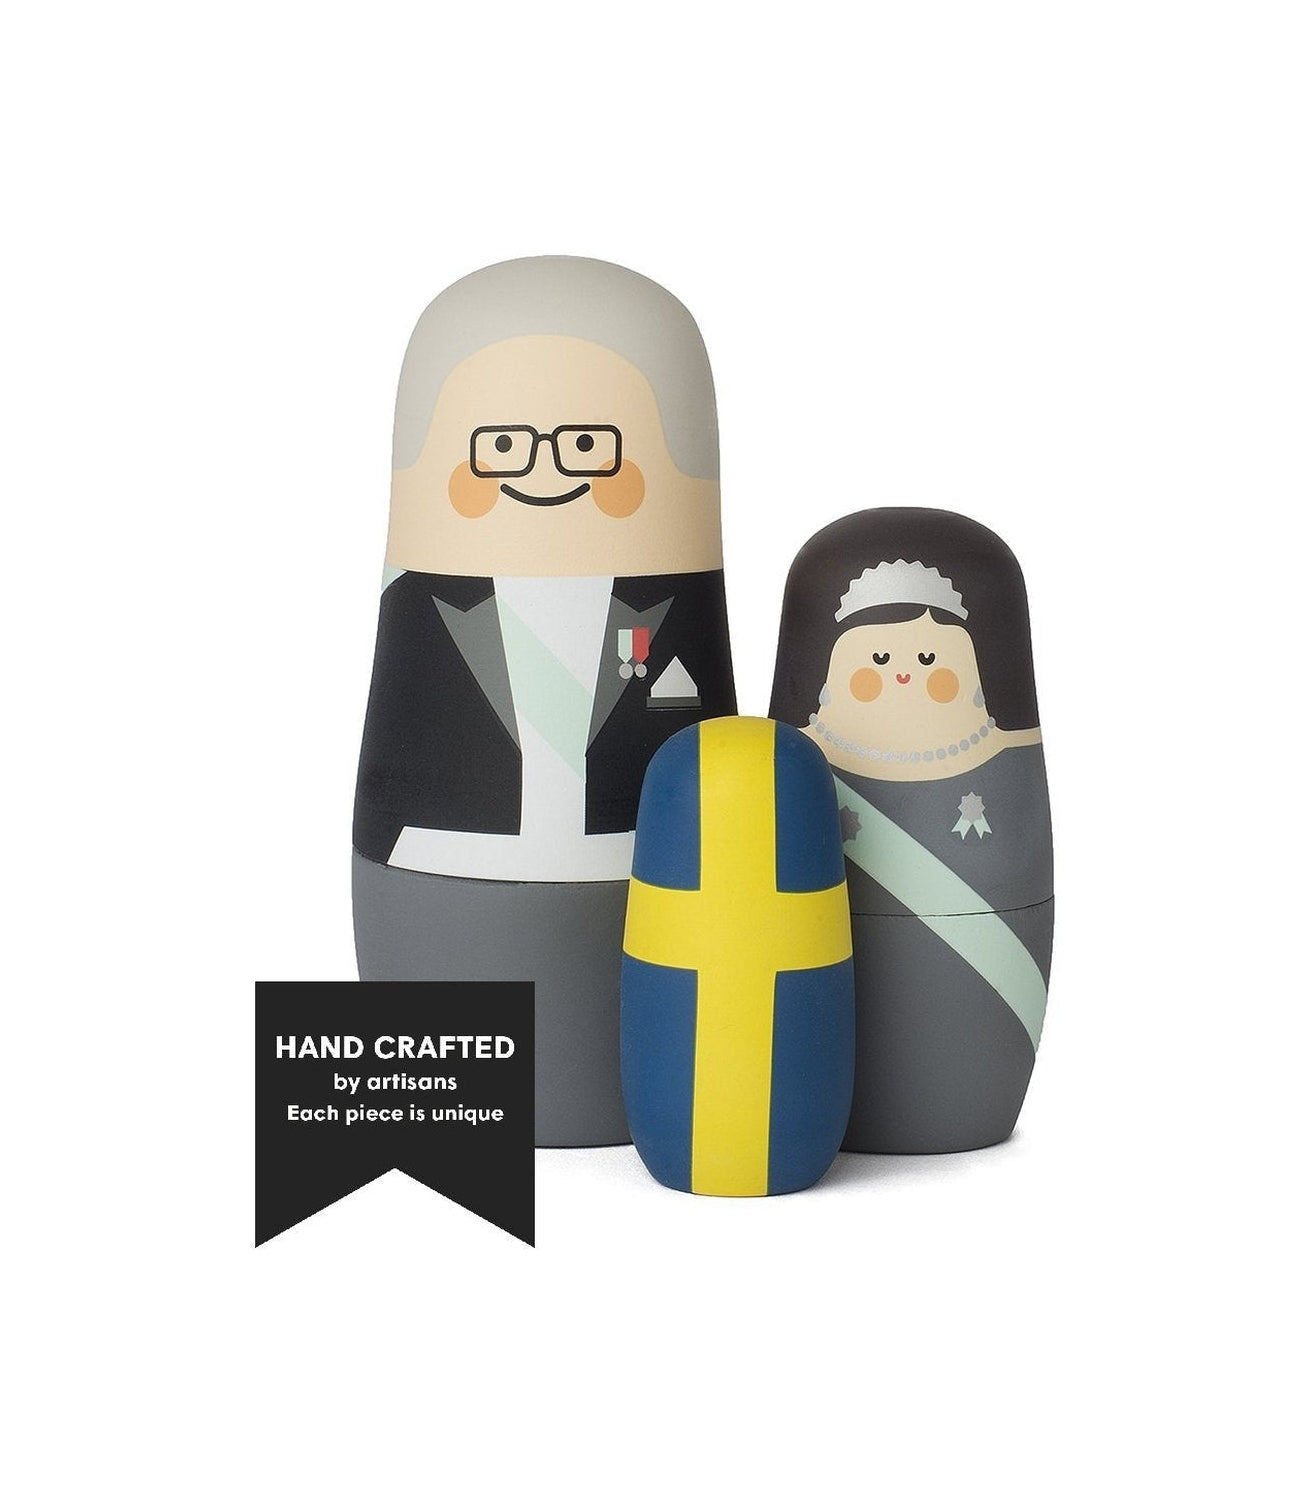 Jarní kodaňské výrazy Švédské licenční poplatky Matryoshka Dolls